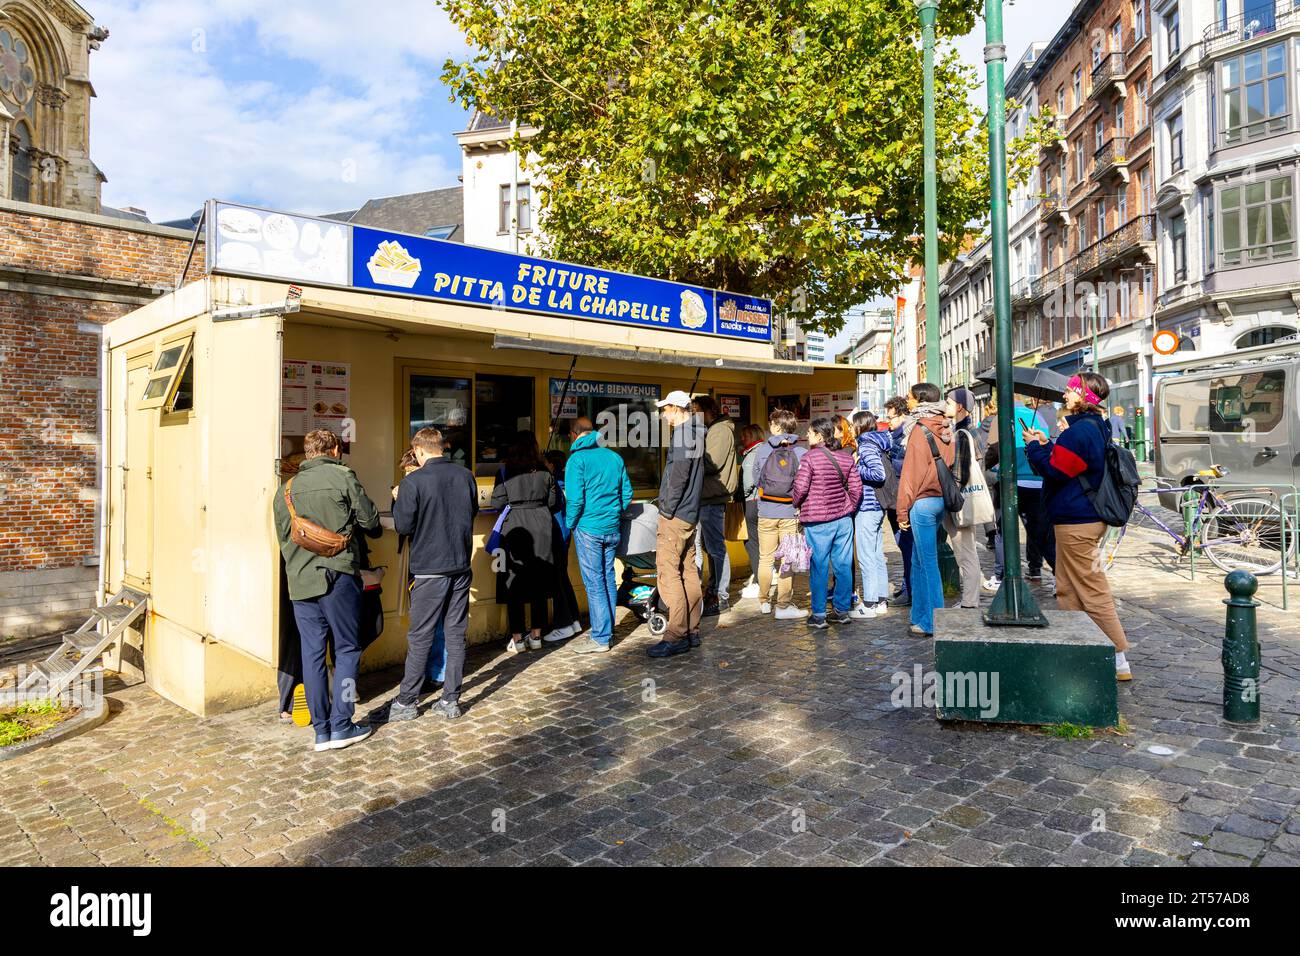 Les gens font la queue pour obtenir des frites belges au kiosque friture Pitta de la Chapelle, Marollen, Bruxelles, Belgique Banque D'Images